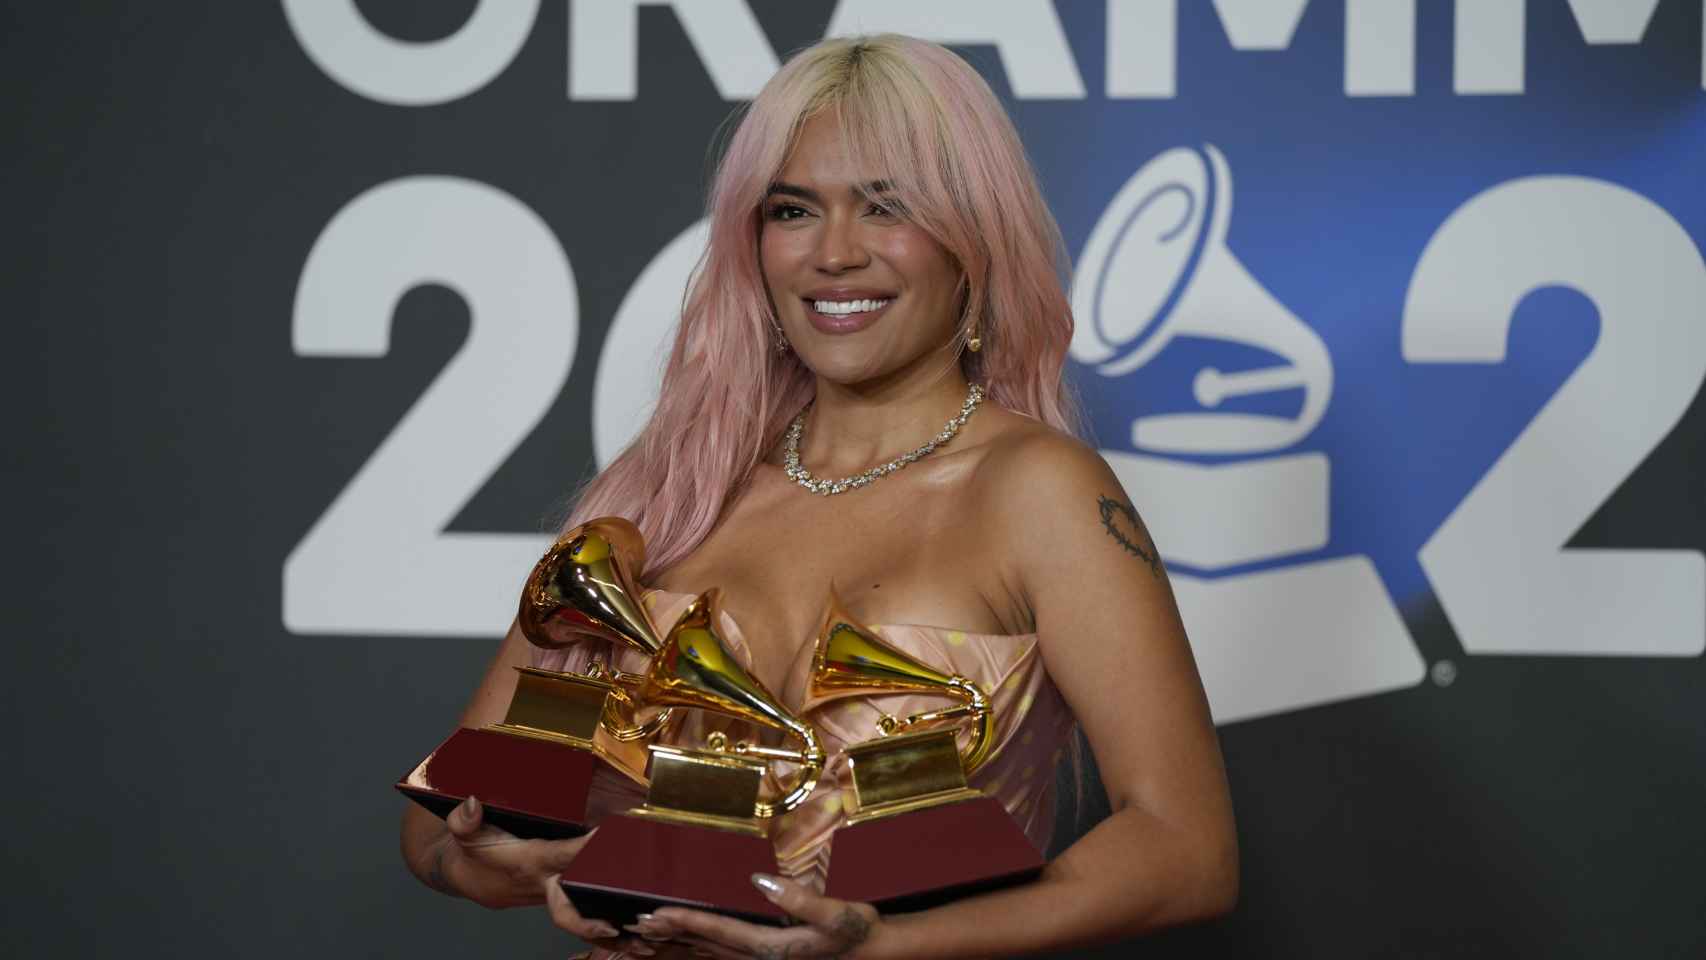 La cantante Karol G posa con los 3 Grammy que le han sido otorgados durante la gala de entrega de los Latin Grammy.